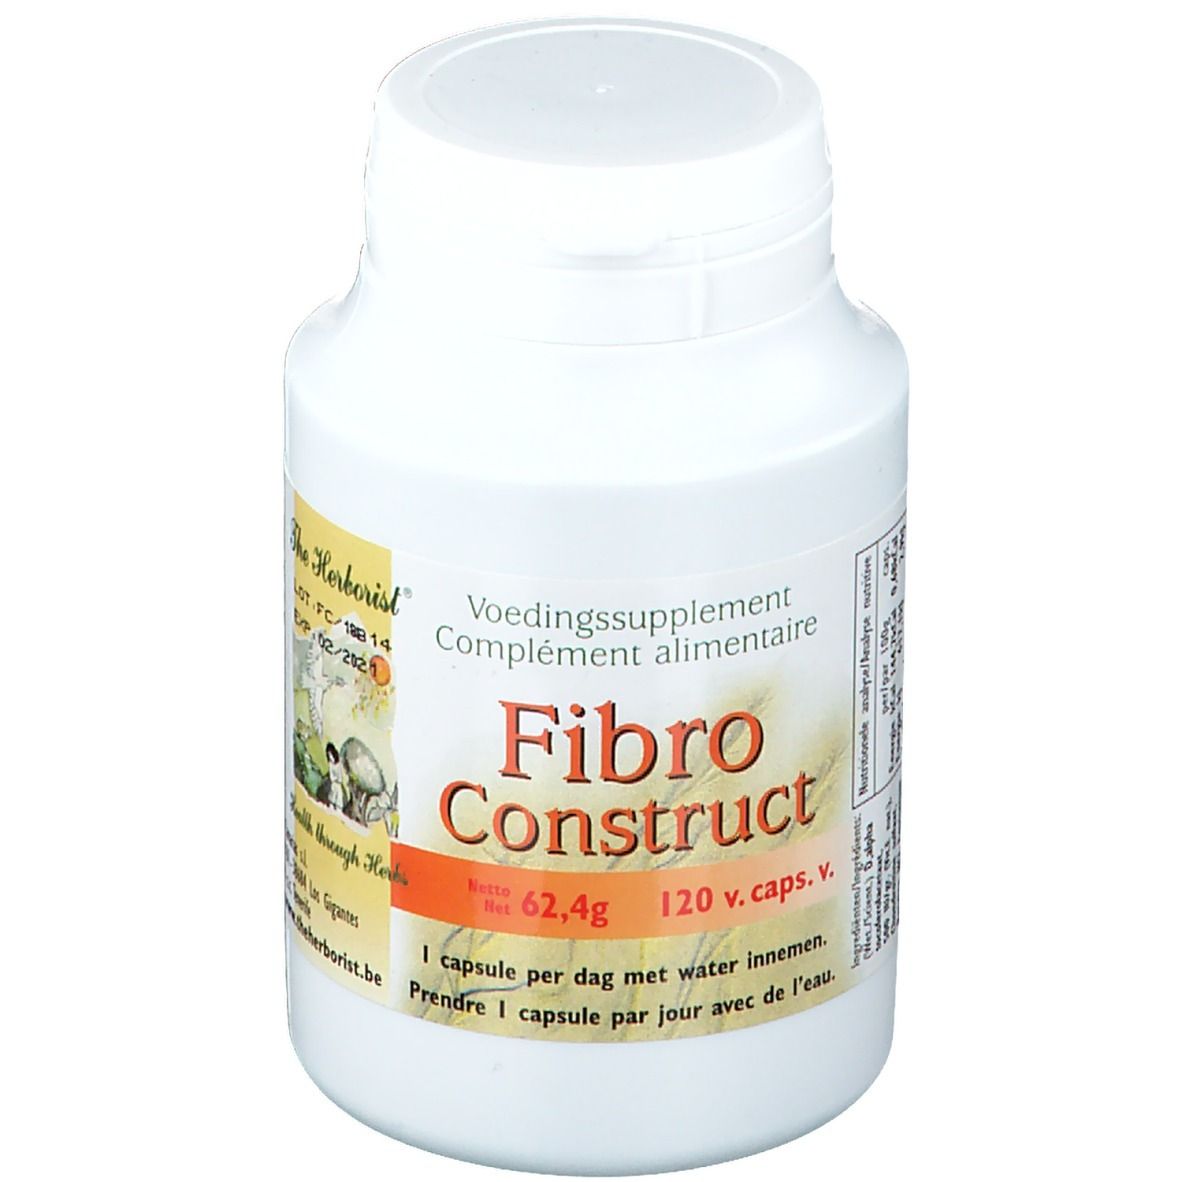 AQUARIUS AGE COMPANY BELGIUM The Herborist® Fibro Construct